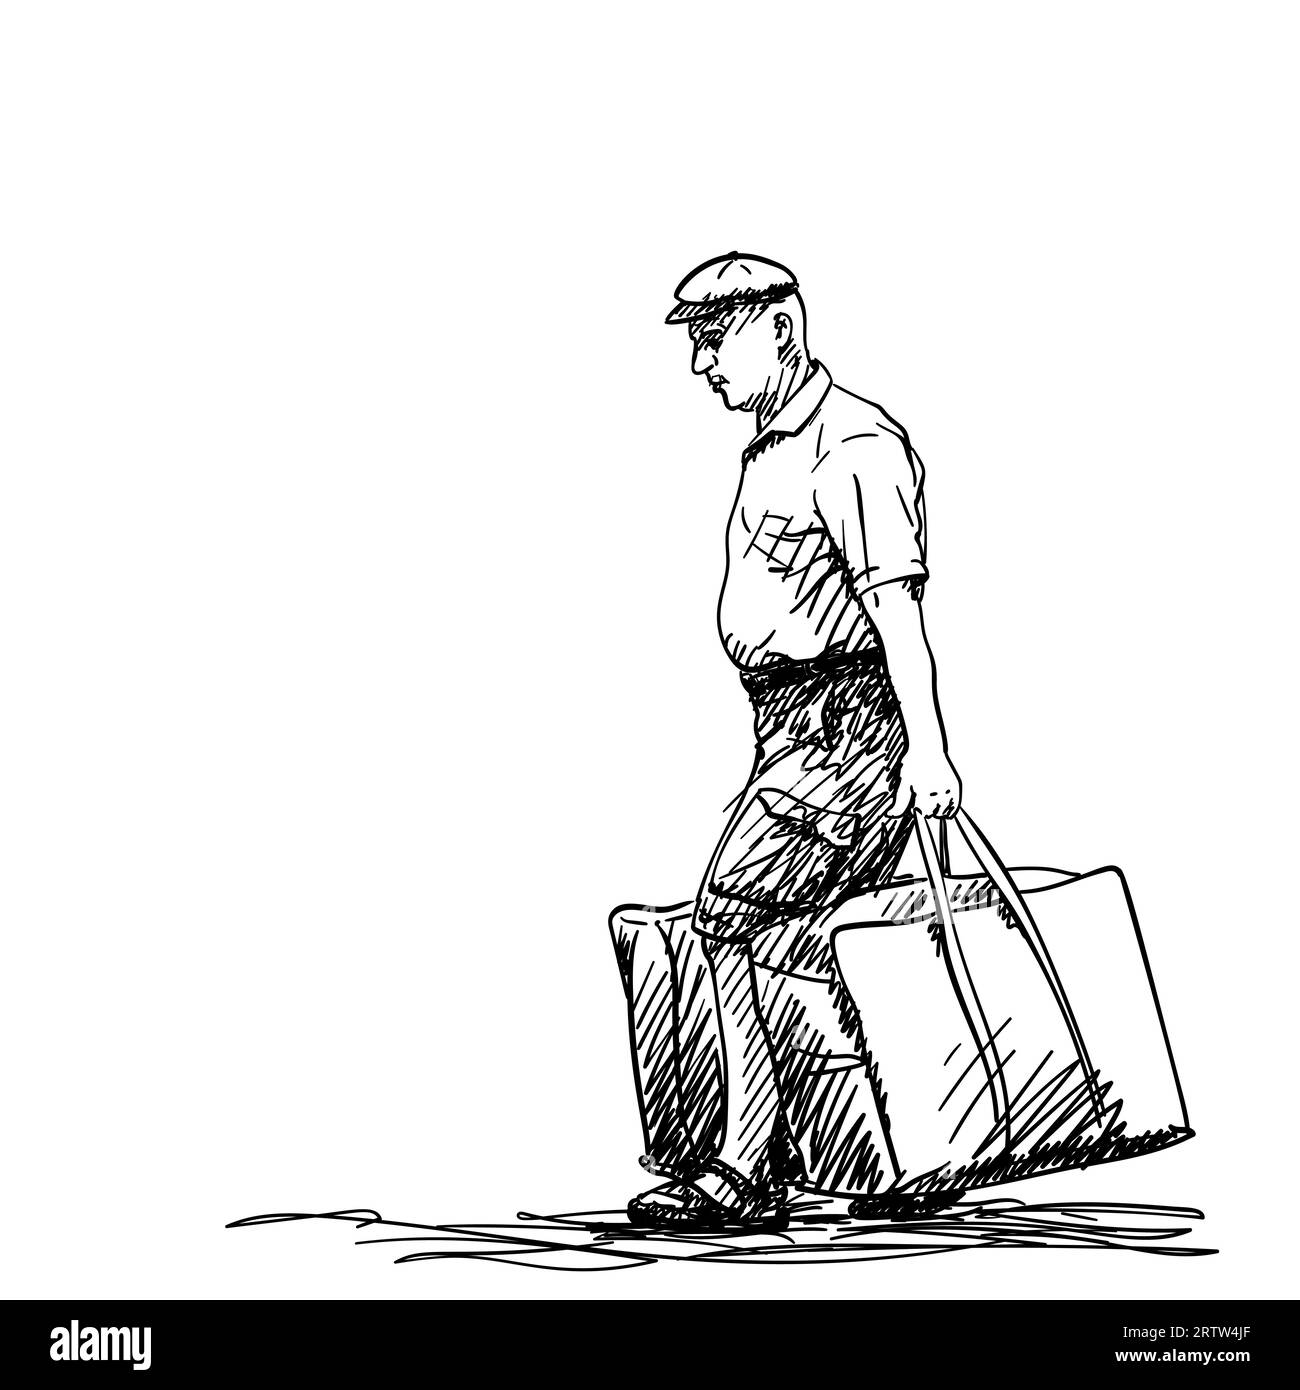 Disegno di un uomo di mezza età che porta due grandi borse pesanti in entrambe le mani e indossa un berretto, disegno vettoriale disegnato a mano Illustrazione Vettoriale